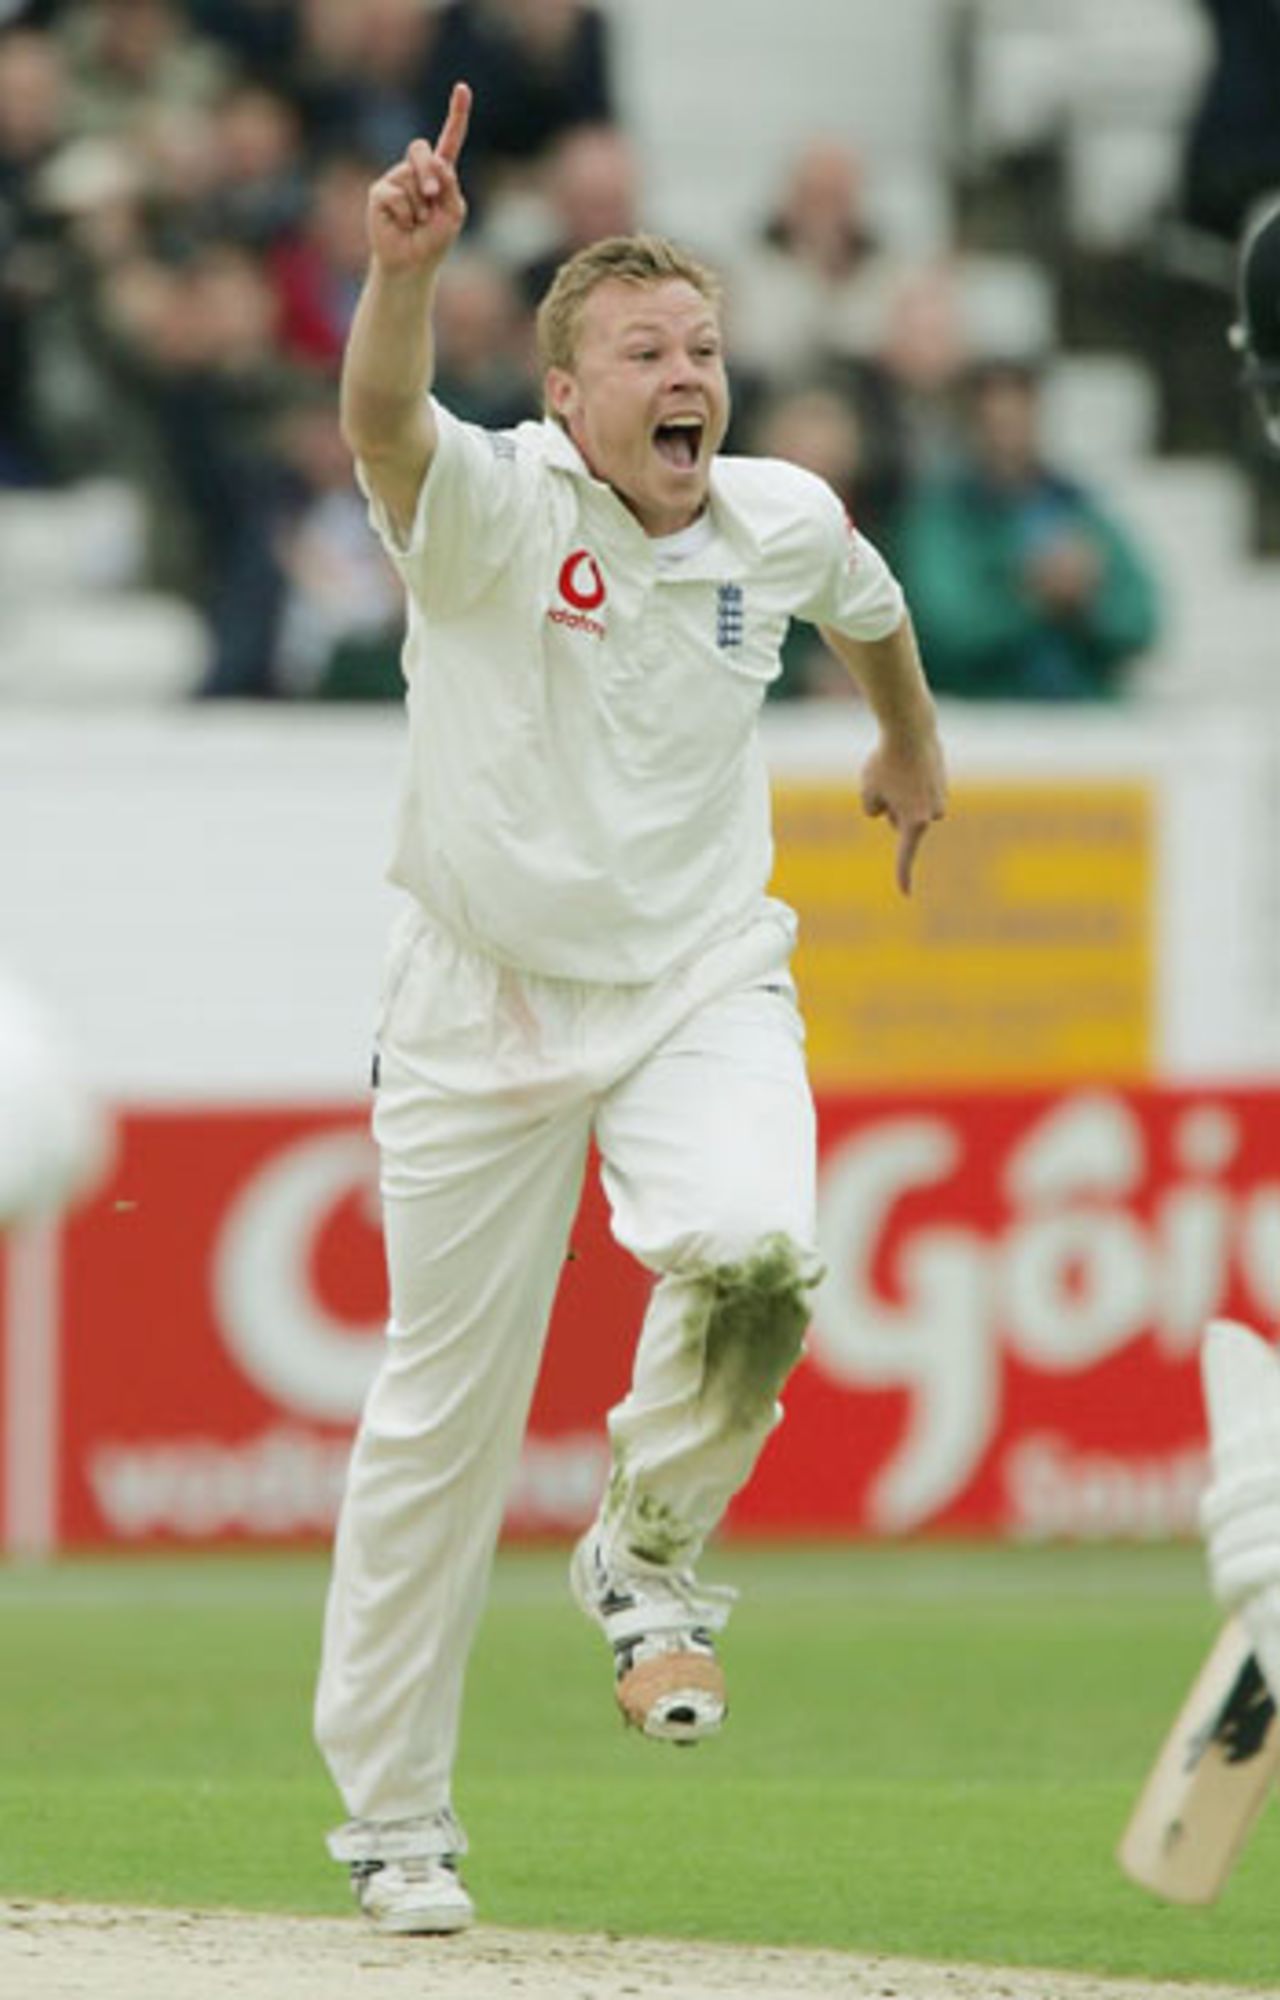 Martin Saggers celebrates bowling Mark Richardson, England v New Zealand, 2nd Test, Headingley, June 3, 2004